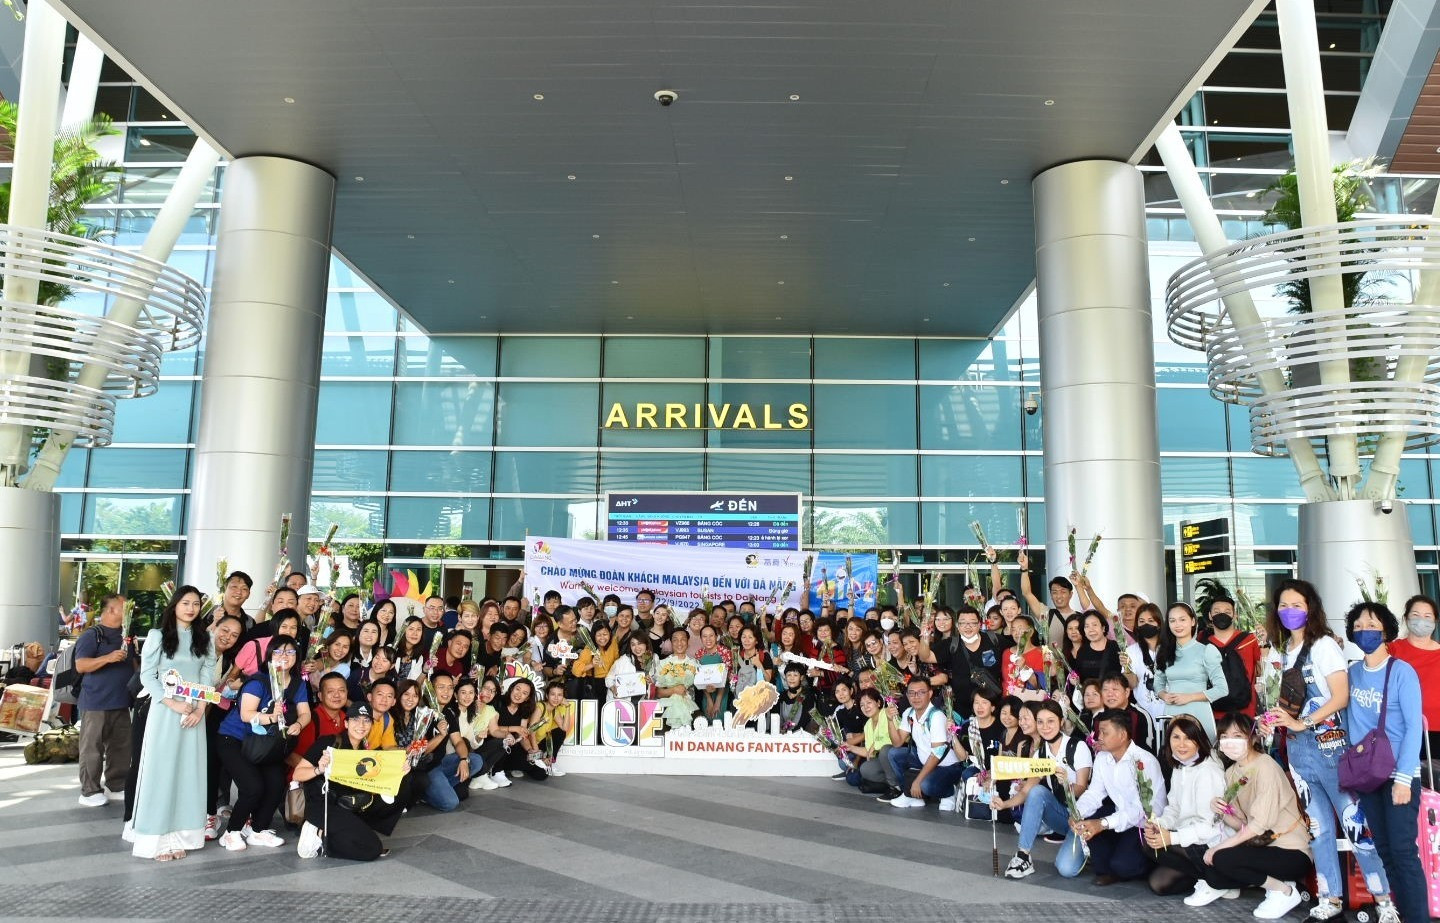 Lãnh đạo Sở Du lịch Đà Nẵng chào đón và tặng hoa cho đoàn khách MICE đến từ Malaysia tại Sân bay quốc tê Đà Nẵng ngày 19.9.2022. Ảnh XL